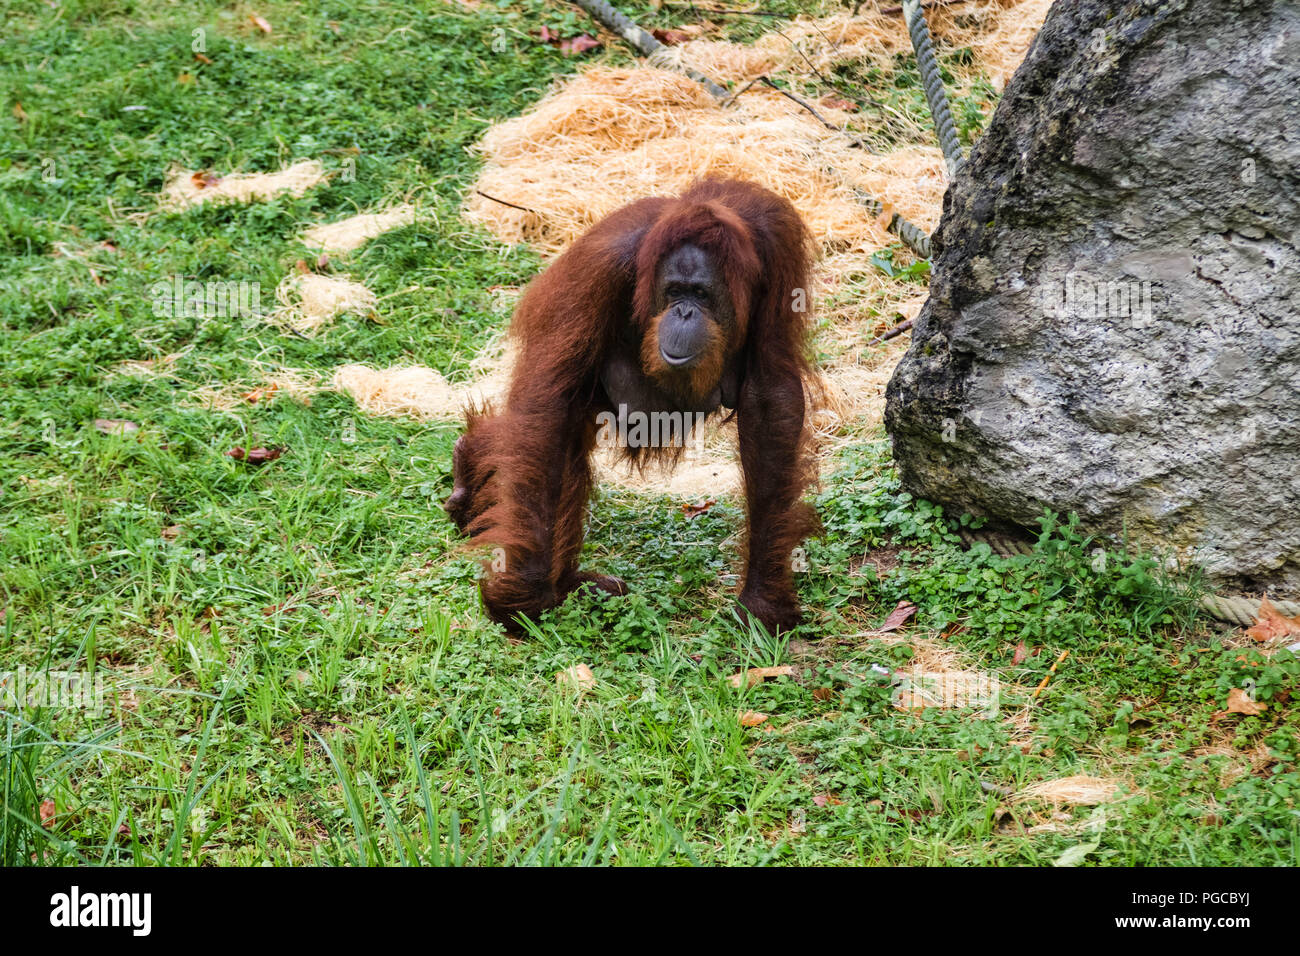 L'orang-outan est le plus gros mammifère arboricole, le seul des grands singes à passer sa vie entière dans les arbres. Foto Stock